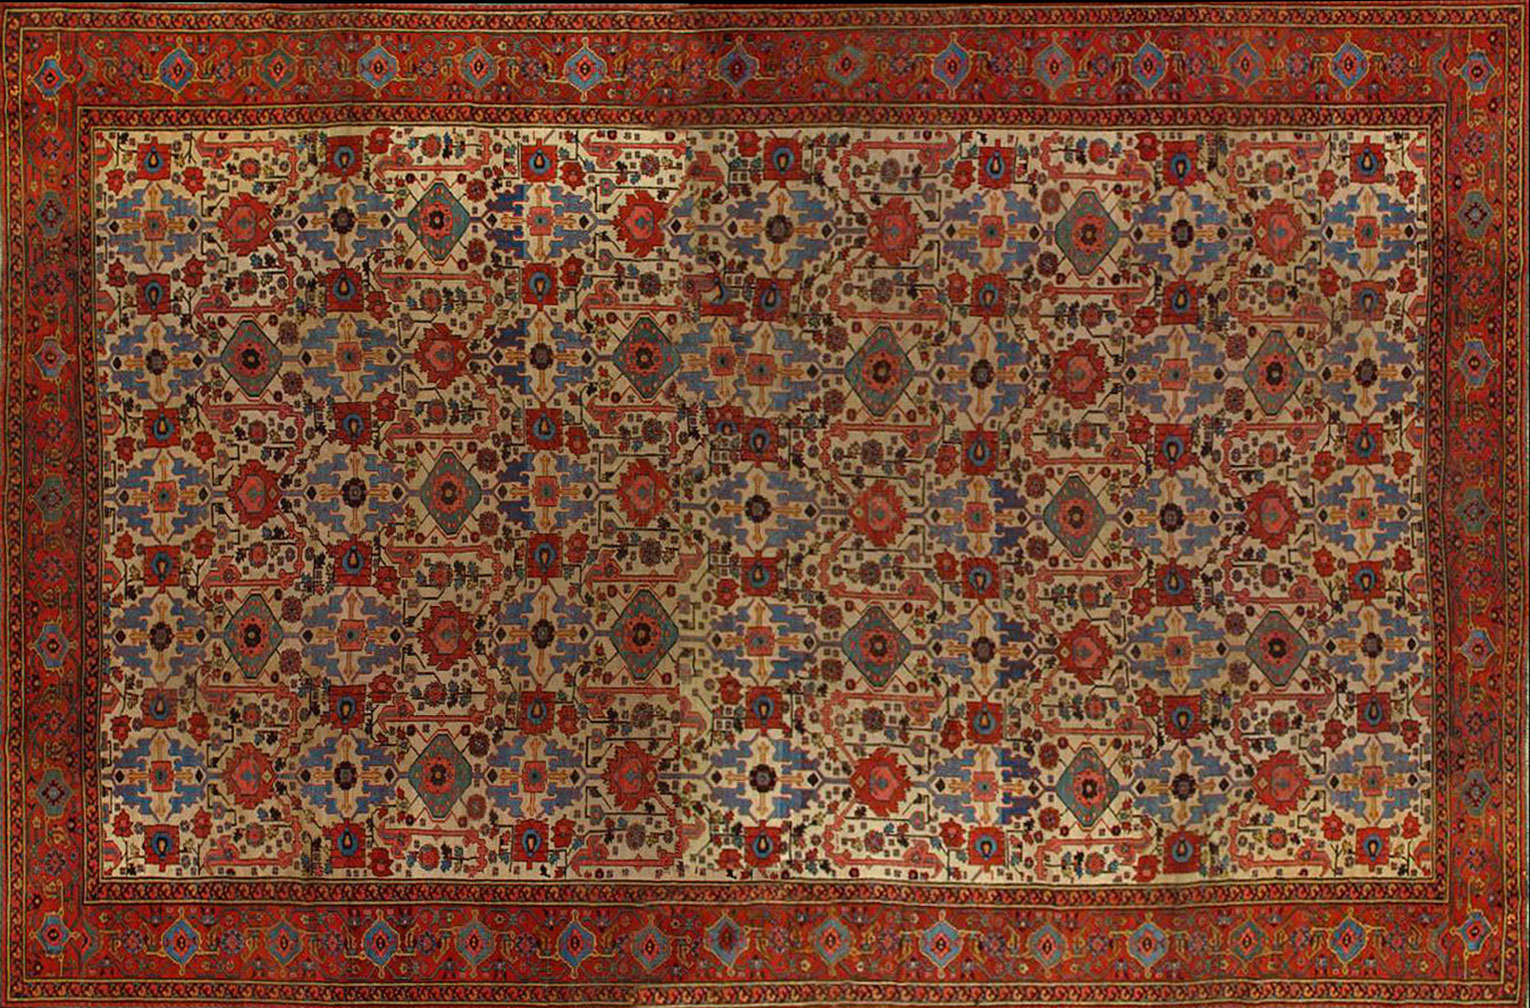 Antique bakshaish Carpet - # 52046